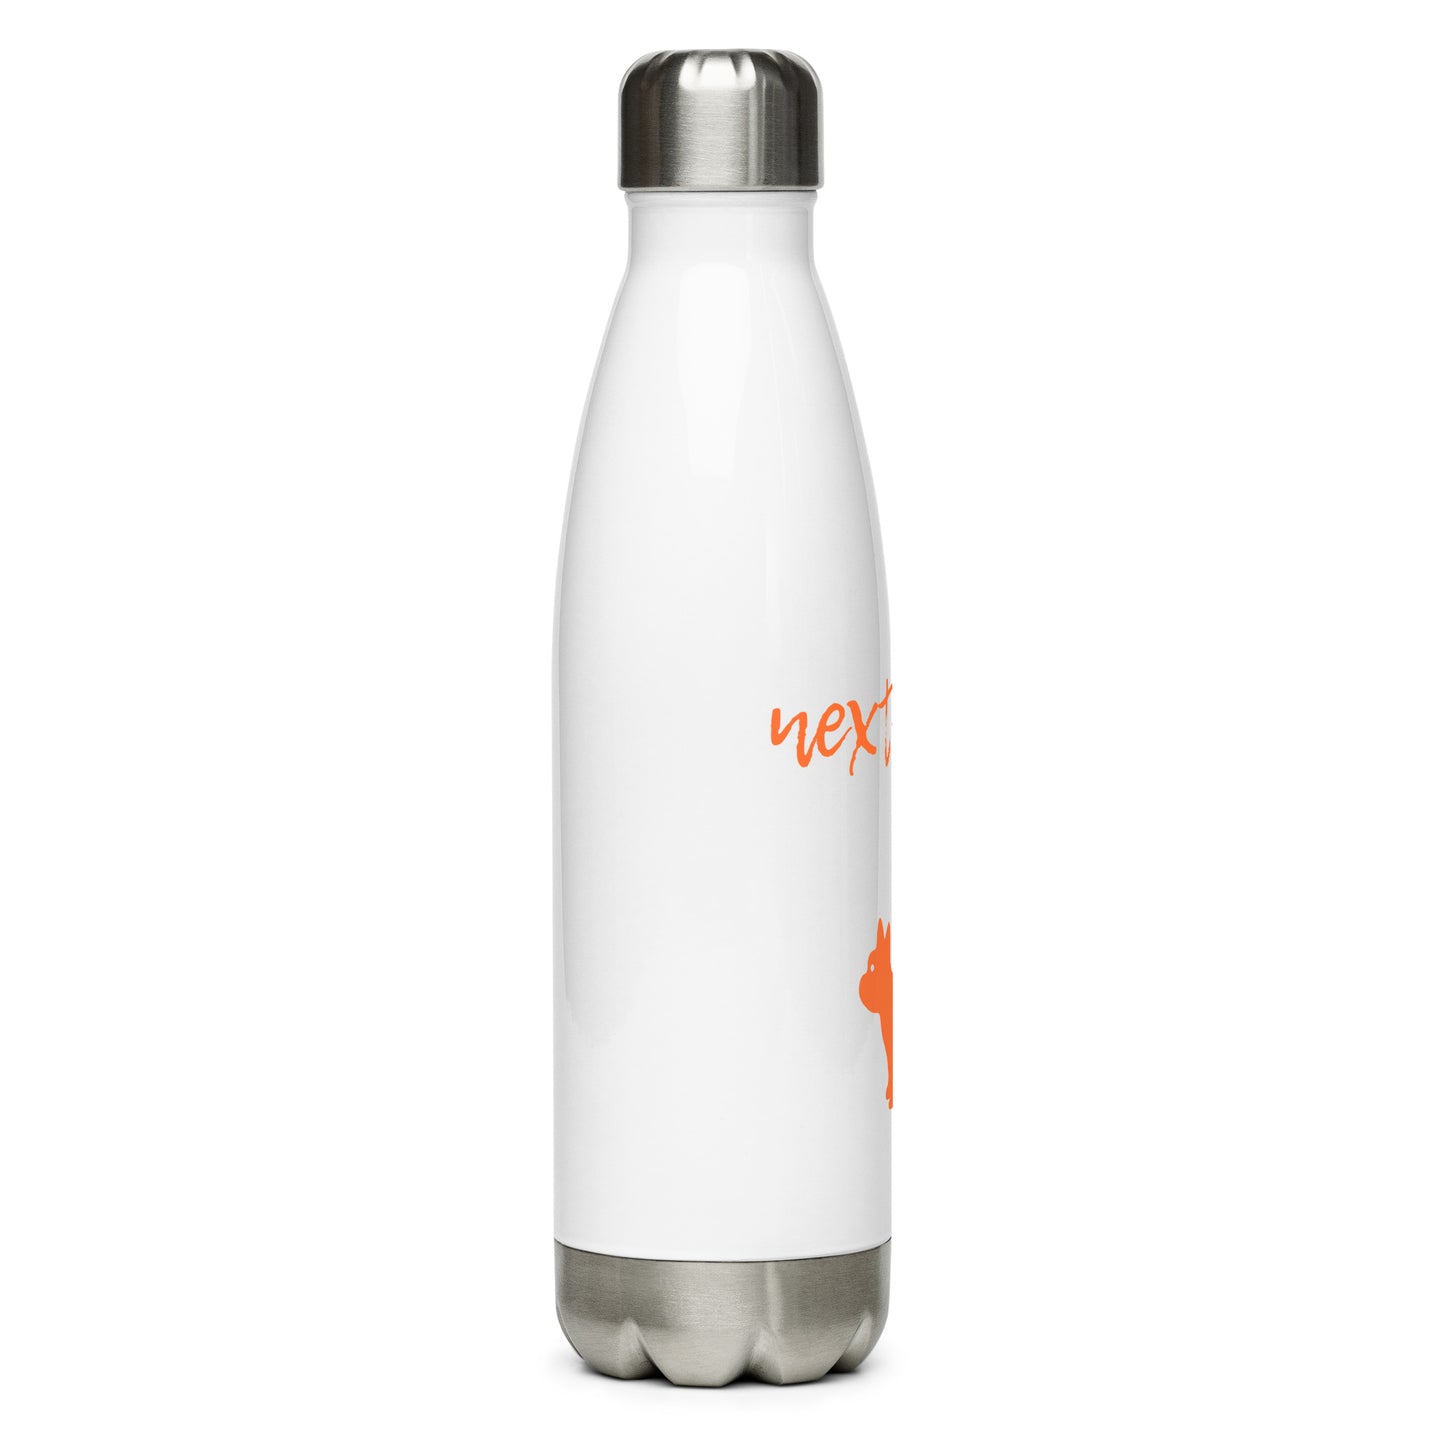 NextHomie & LukeStainless Steel Water Bottle